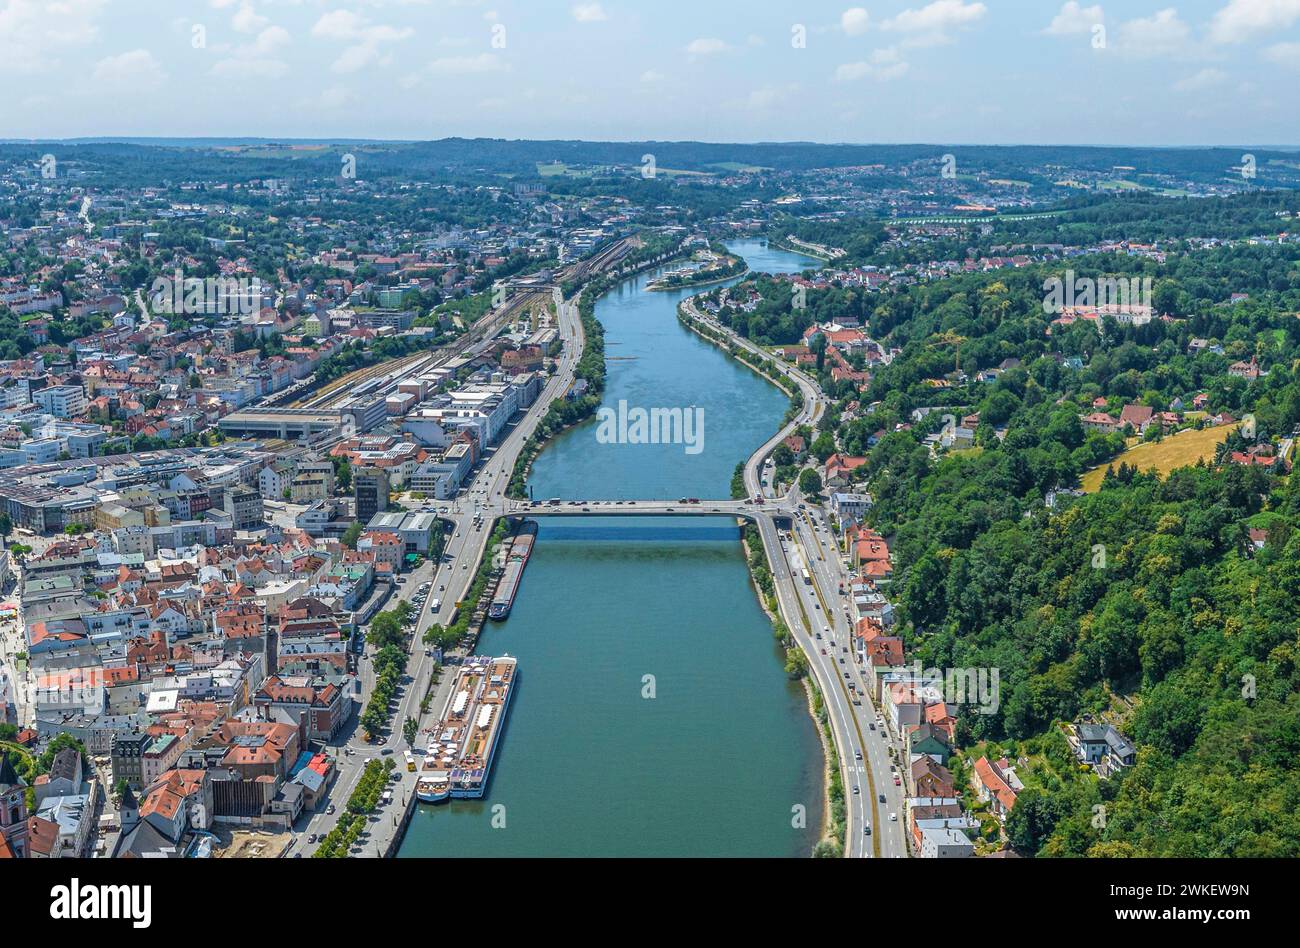 Die Dreiflüssestadt Passau am Zusammenfluß von Donau, Inn und Ilz im Luftbild Ausblick auf die Universitätsstadt Passau in Niederbayern Passau Georgsb Banque D'Images